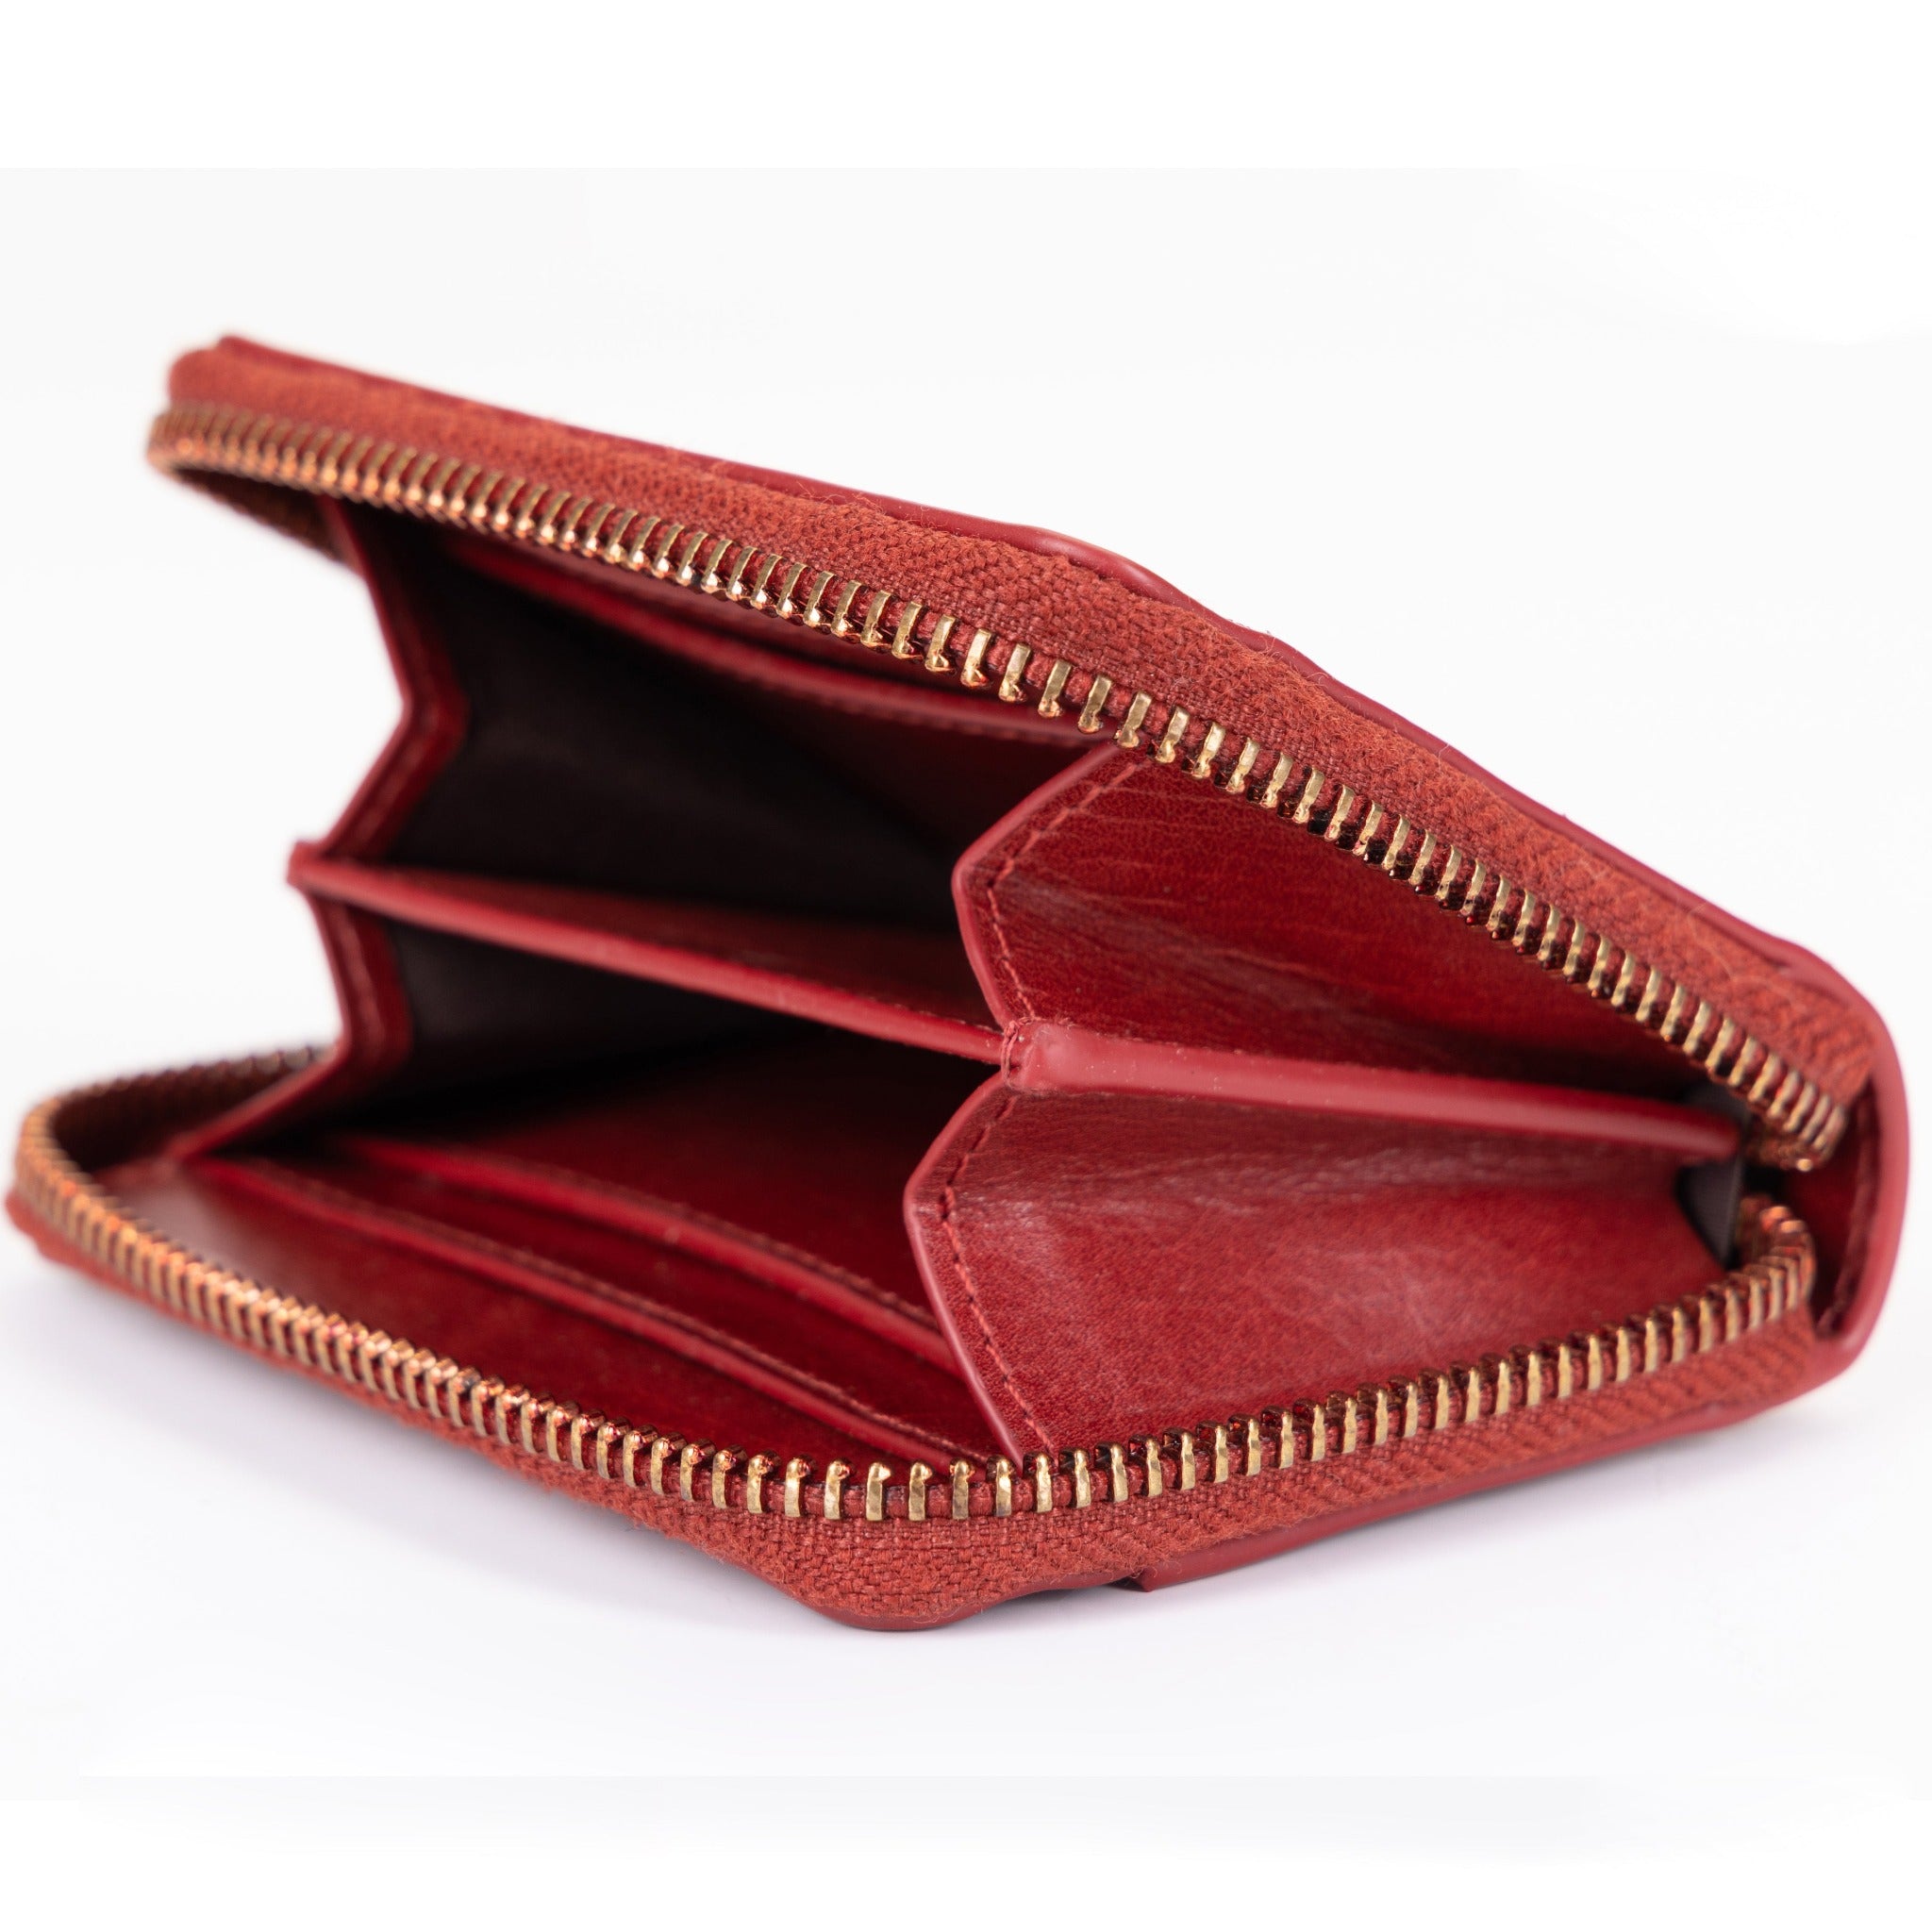 Compact Zip Wallet Red 28839025115287